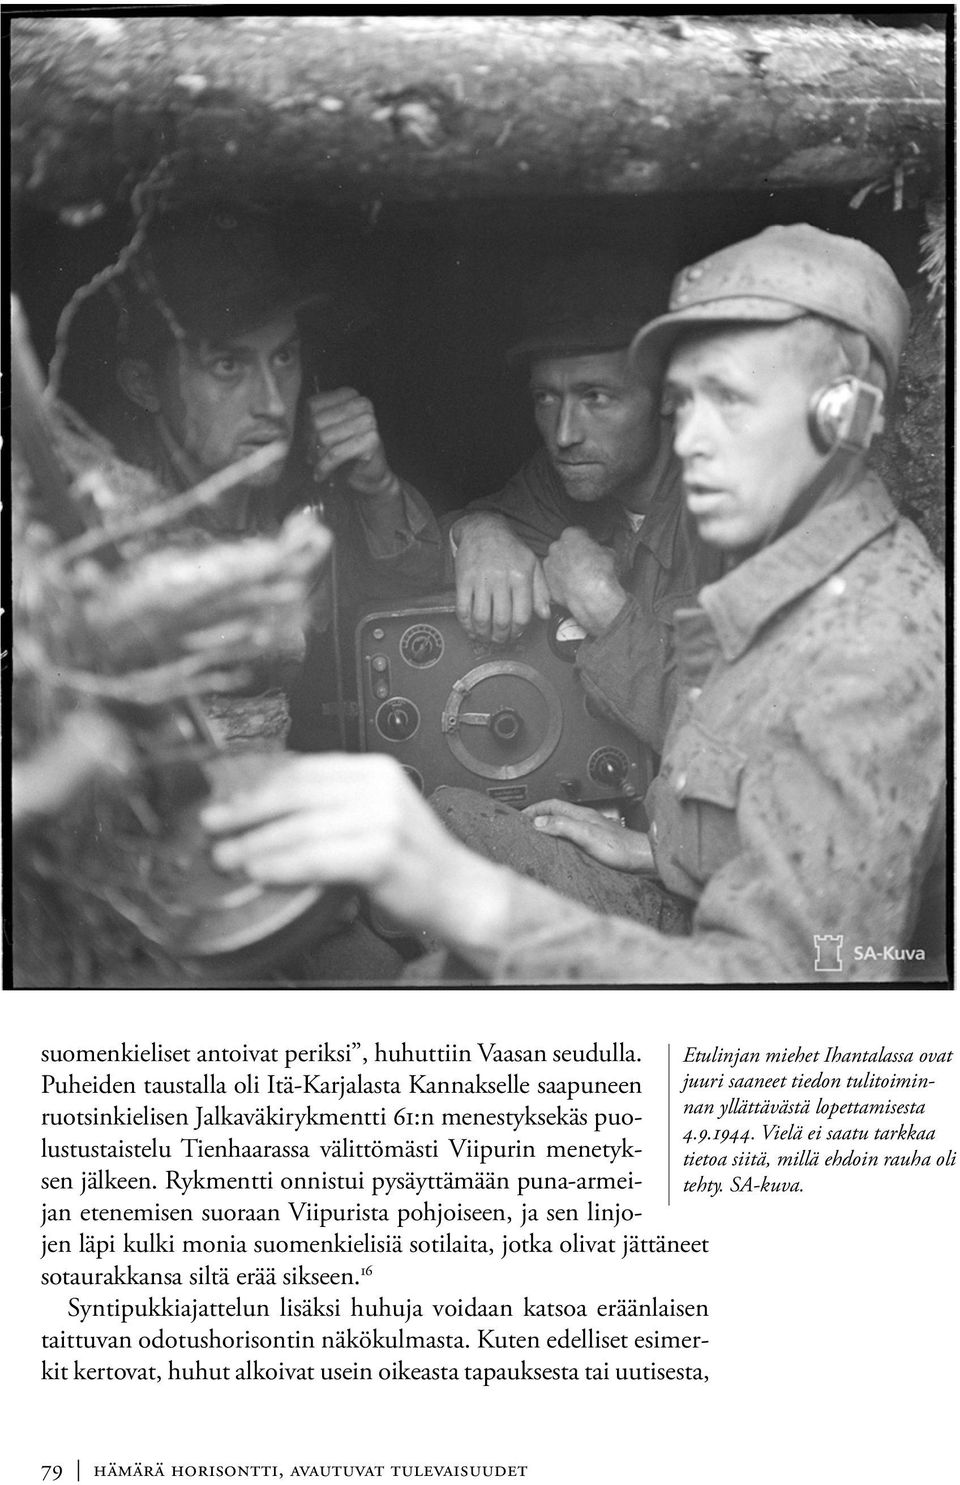 Rykmentti onnistui pysäyttämään puna-armeijan etenemisen suoraan Viipurista pohjoiseen, ja sen linjojen läpi kulki monia suomenkielisiä sotilaita, jotka olivat jättäneet sotaurakkansa siltä erää